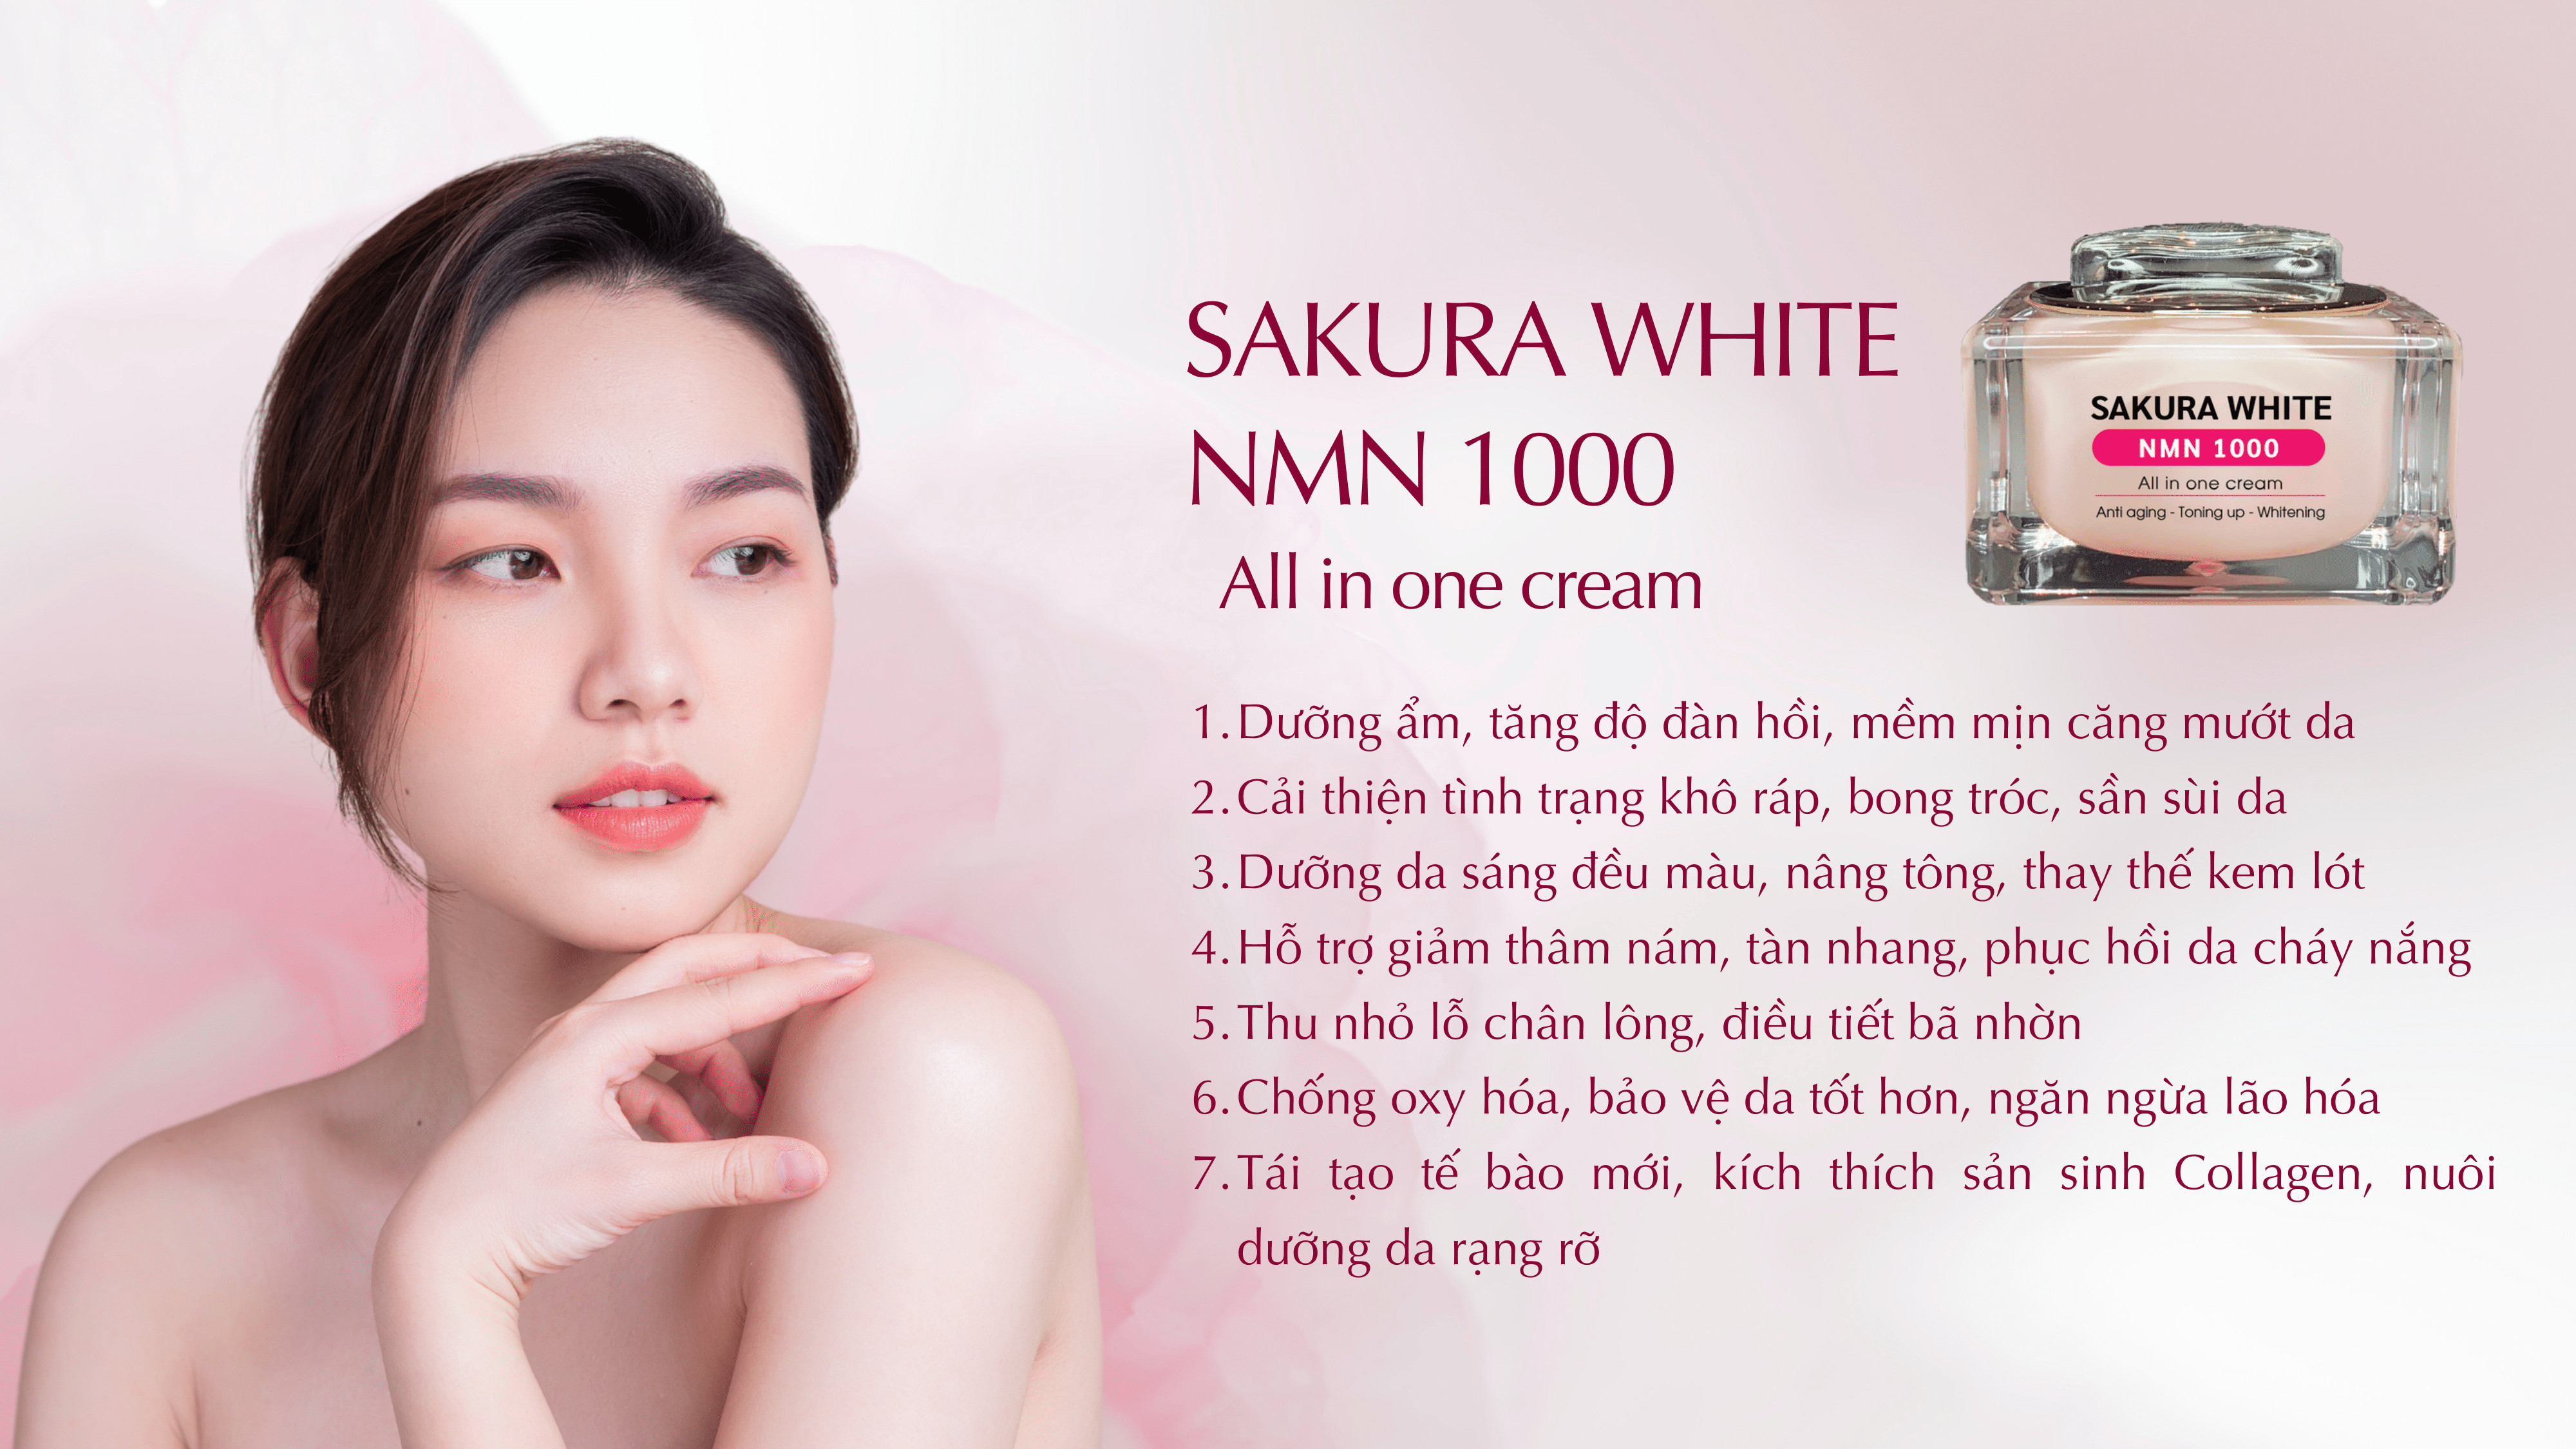 Kem Sakura White Nmn 1000 giúp dưỡng trắng, chống nắng